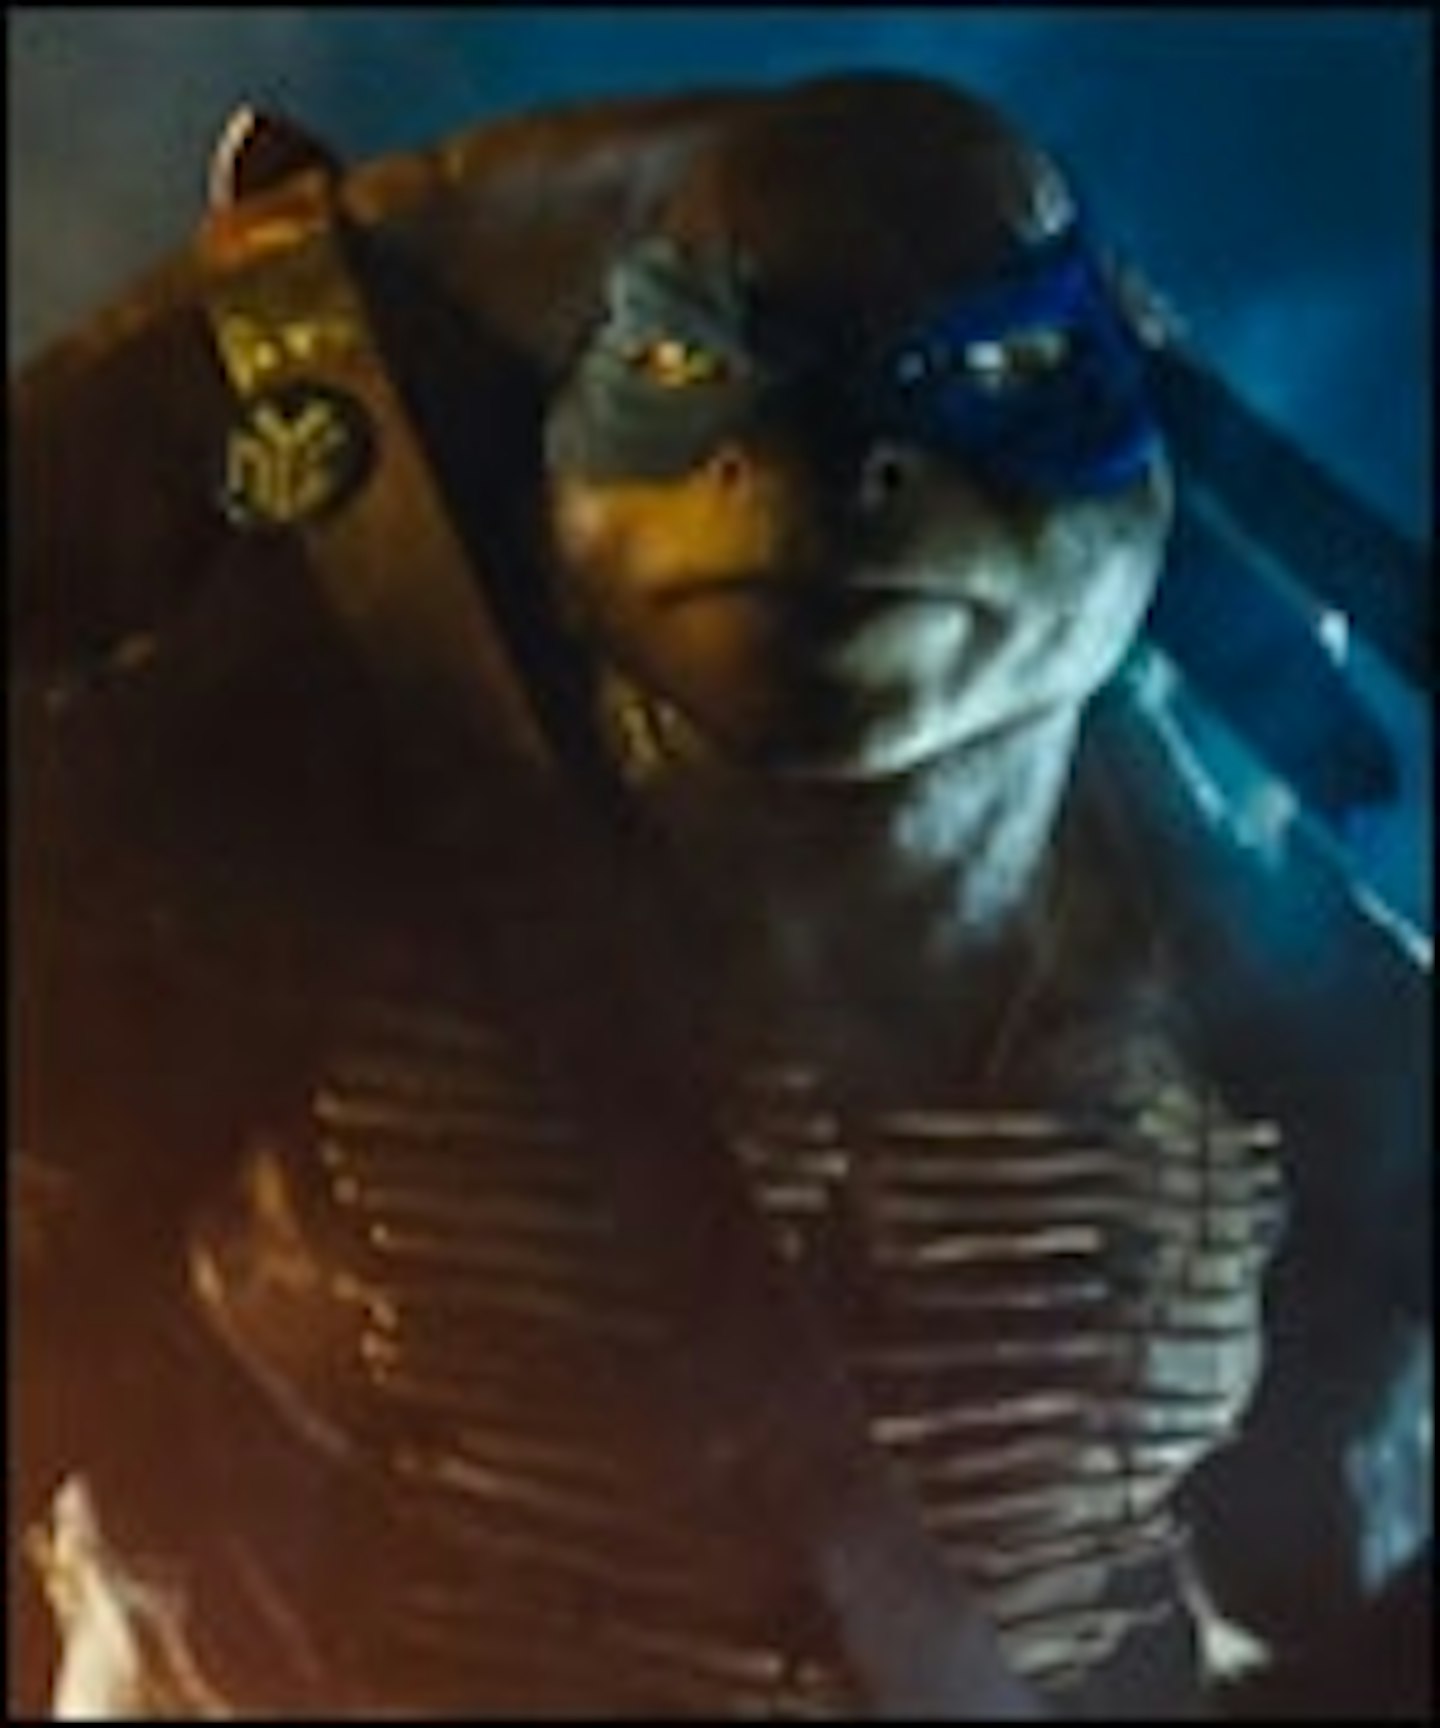 Teenage Mutant Ninja Turtles Teaser Trailer Lands